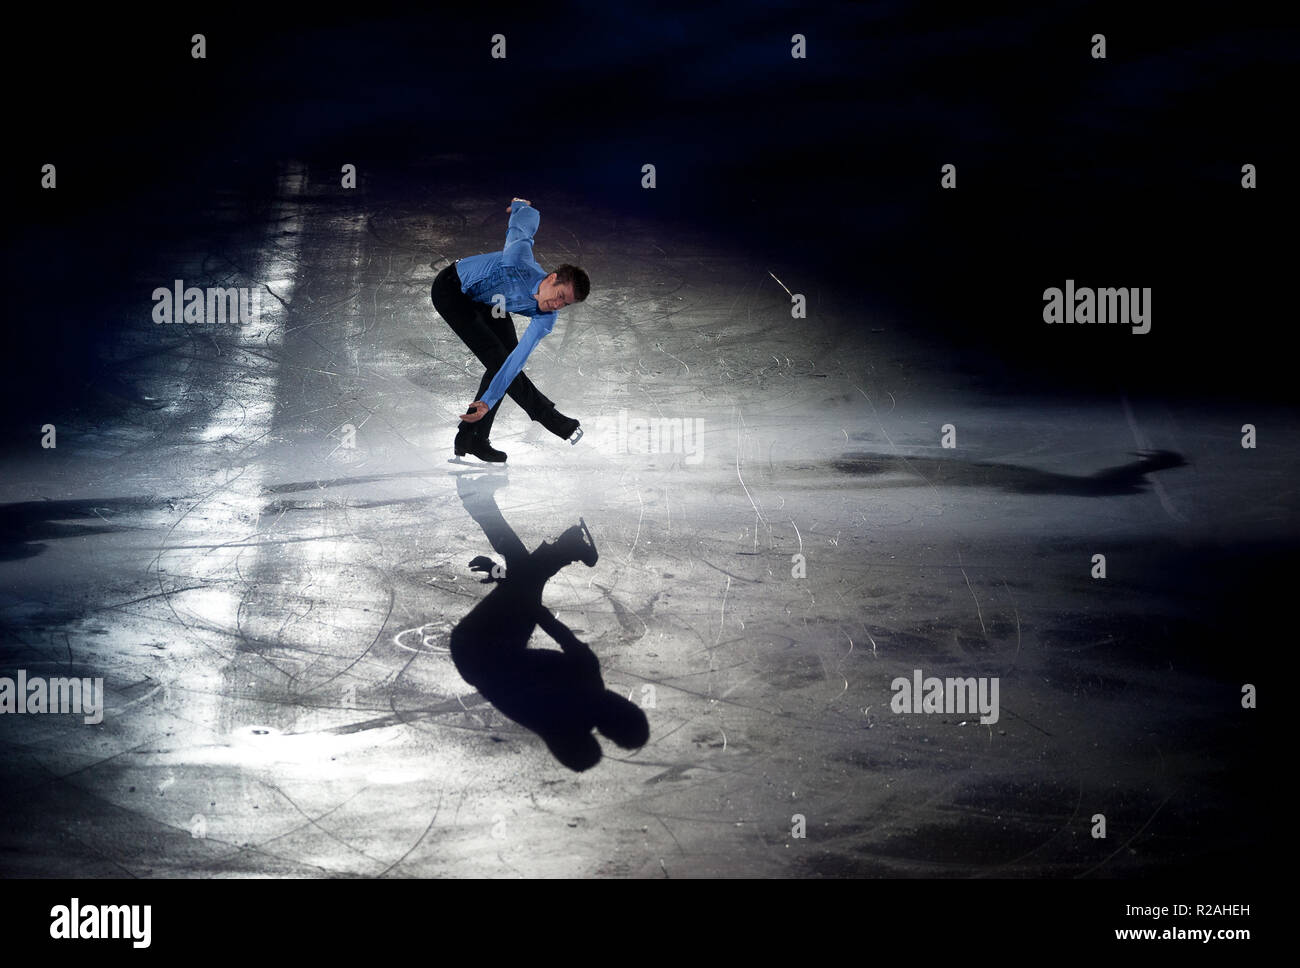 Tour de patinaje fotografías e imágenes de alta resolución - Página 5 -  Alamy